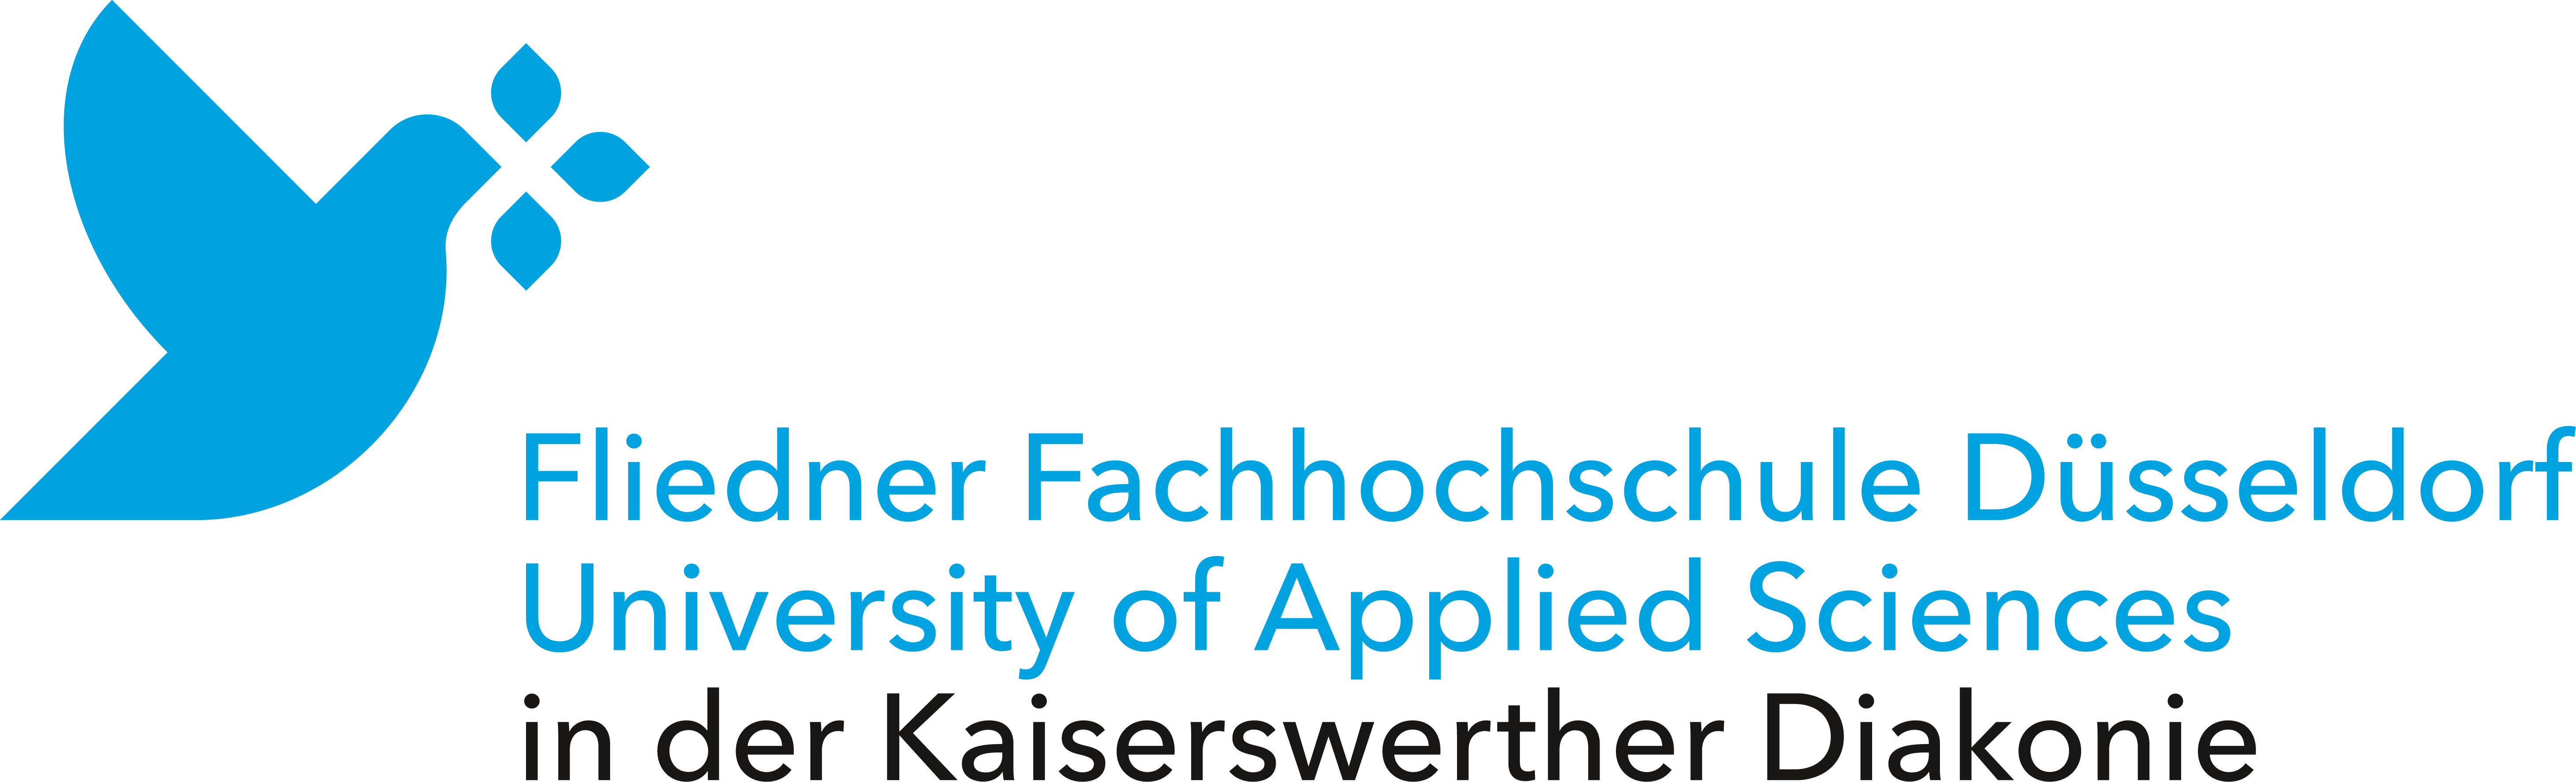 Logo: Fliedner Fachhochschule Düsseldorf